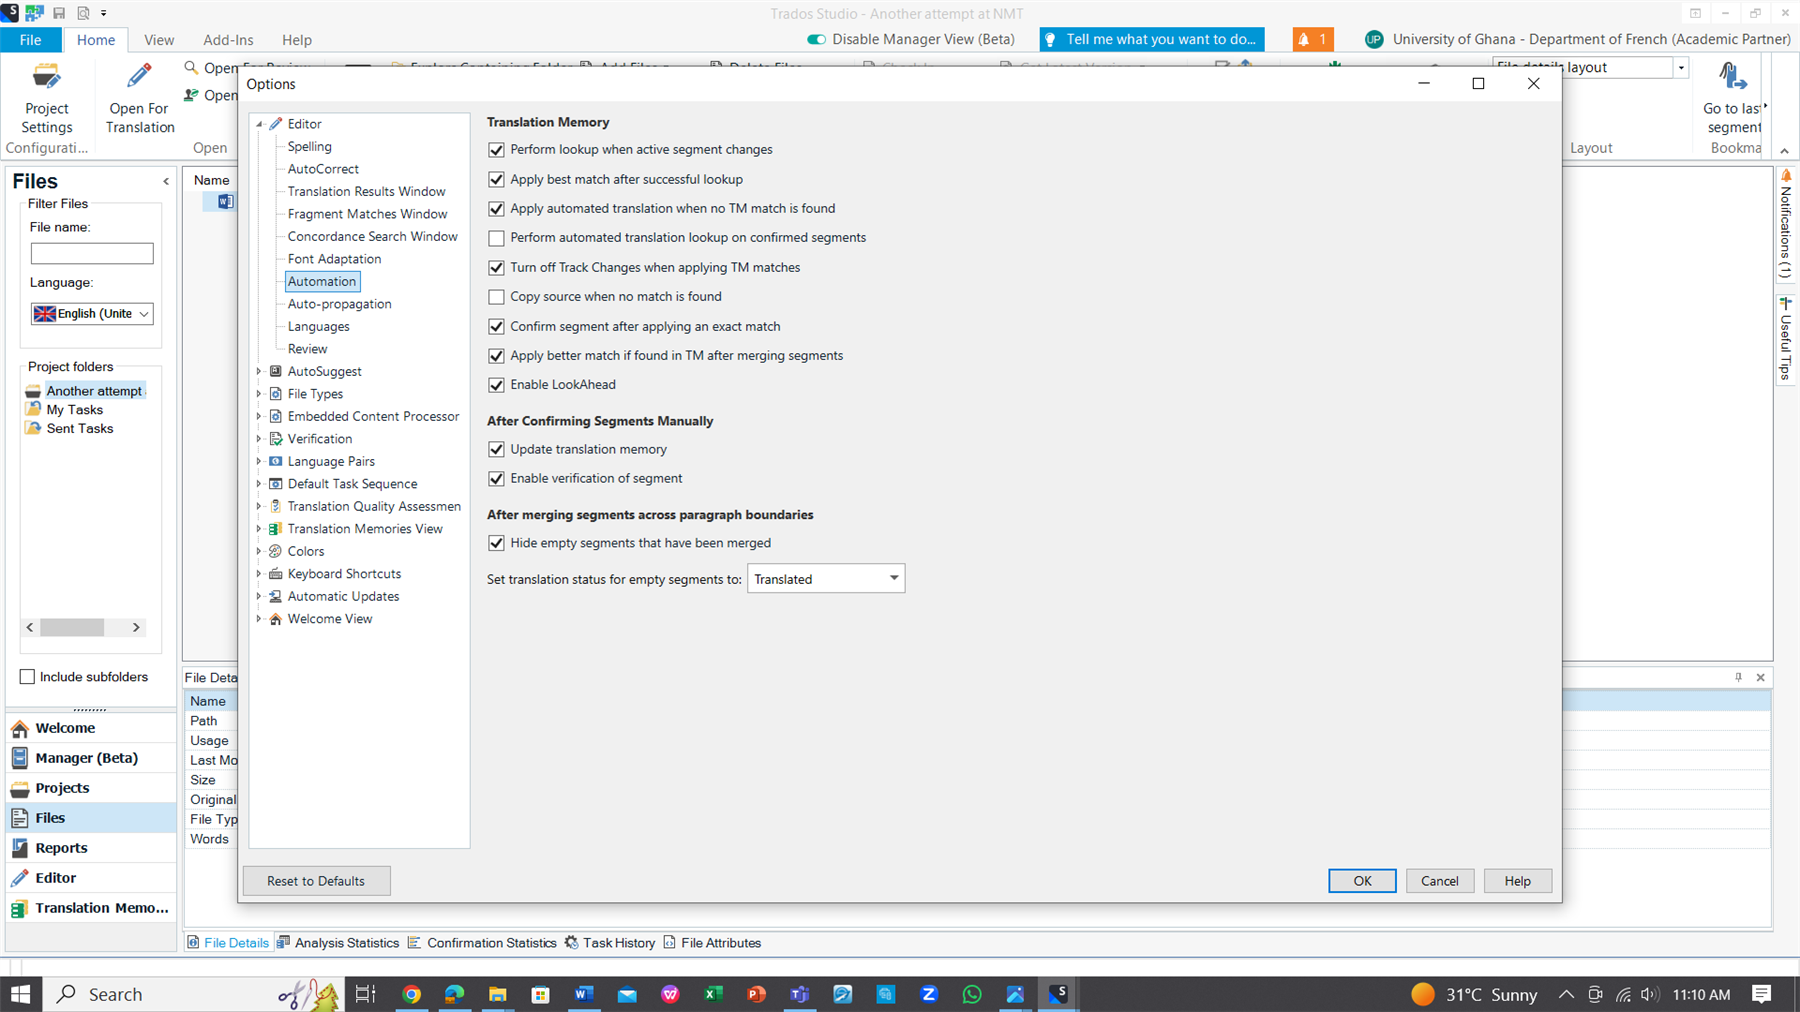 Screenshot of Trados Studio options menu with Translation Memory settings visible, no visible errors or warnings.